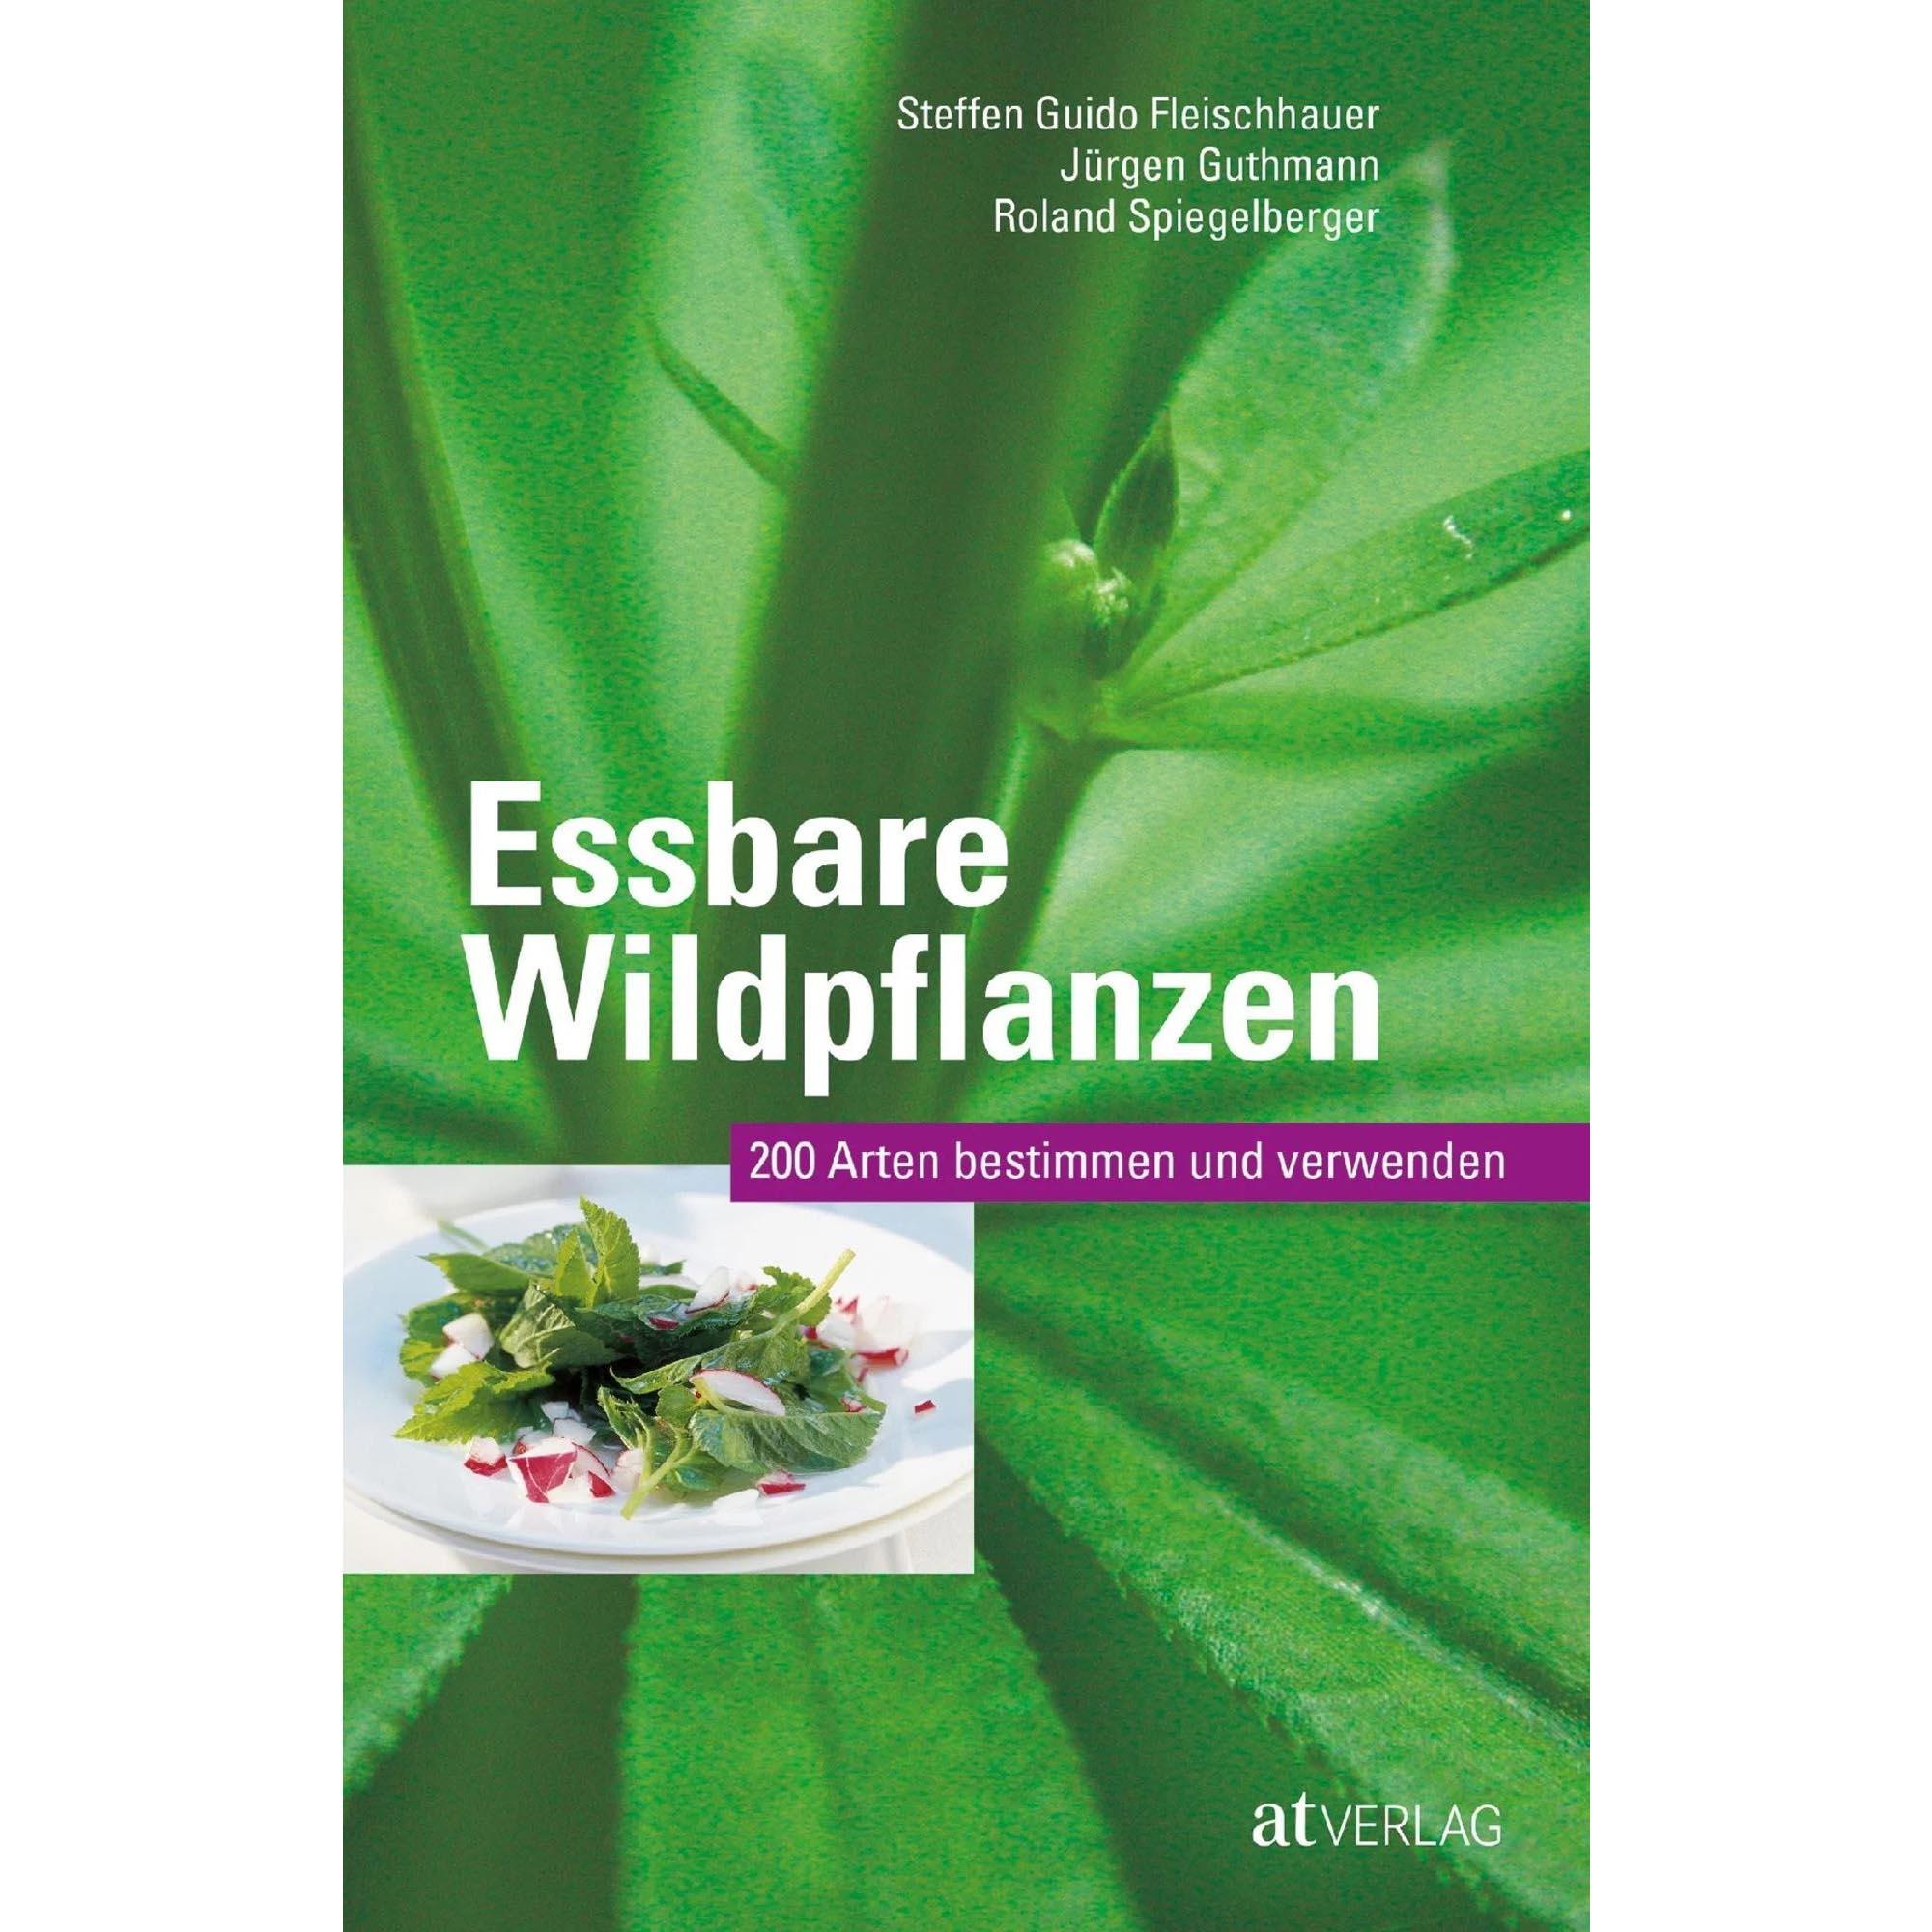 Essbare Wildpflanzen - Fleischhauer, Guthmann, Spiegelberg